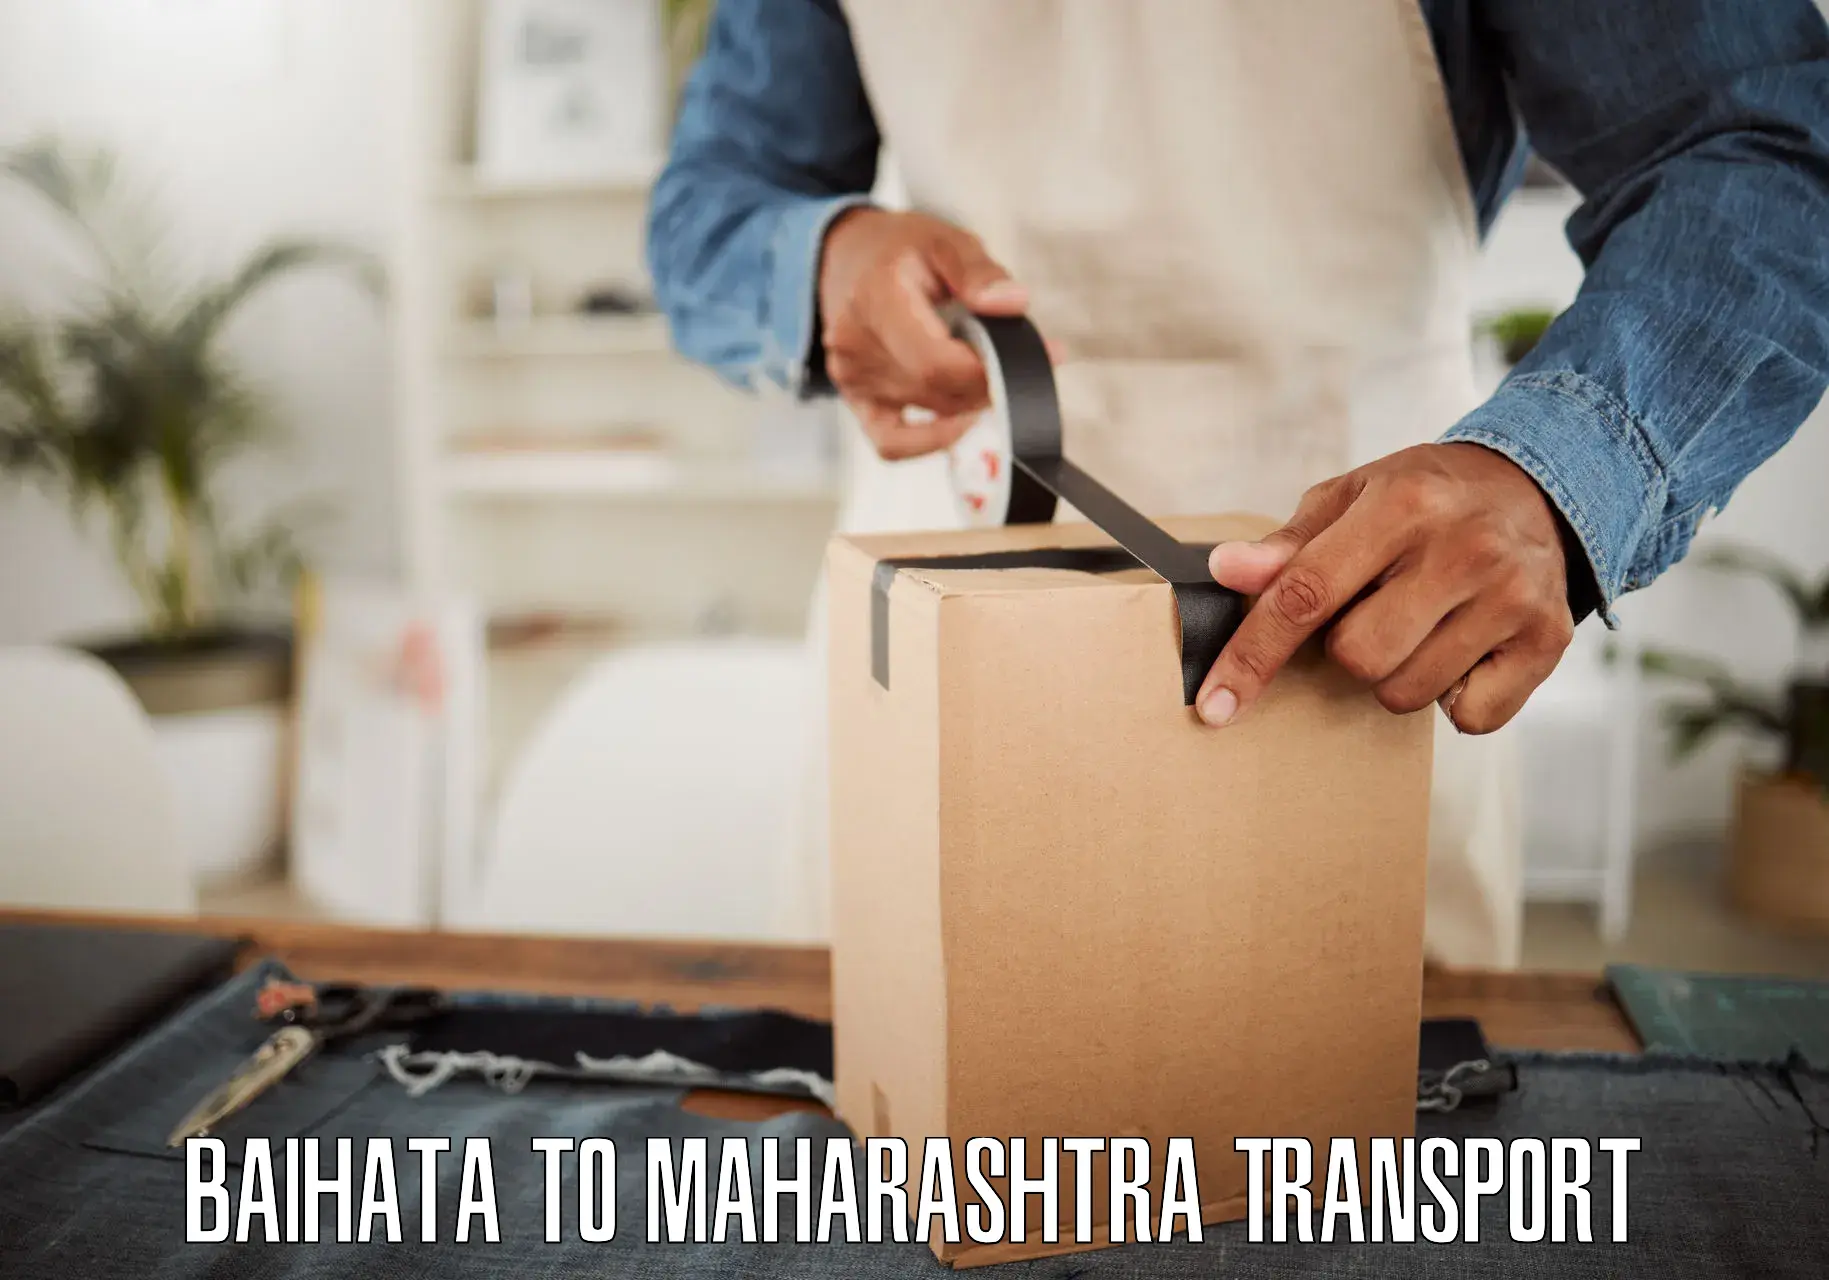 Daily parcel service transport Baihata to Maharashtra